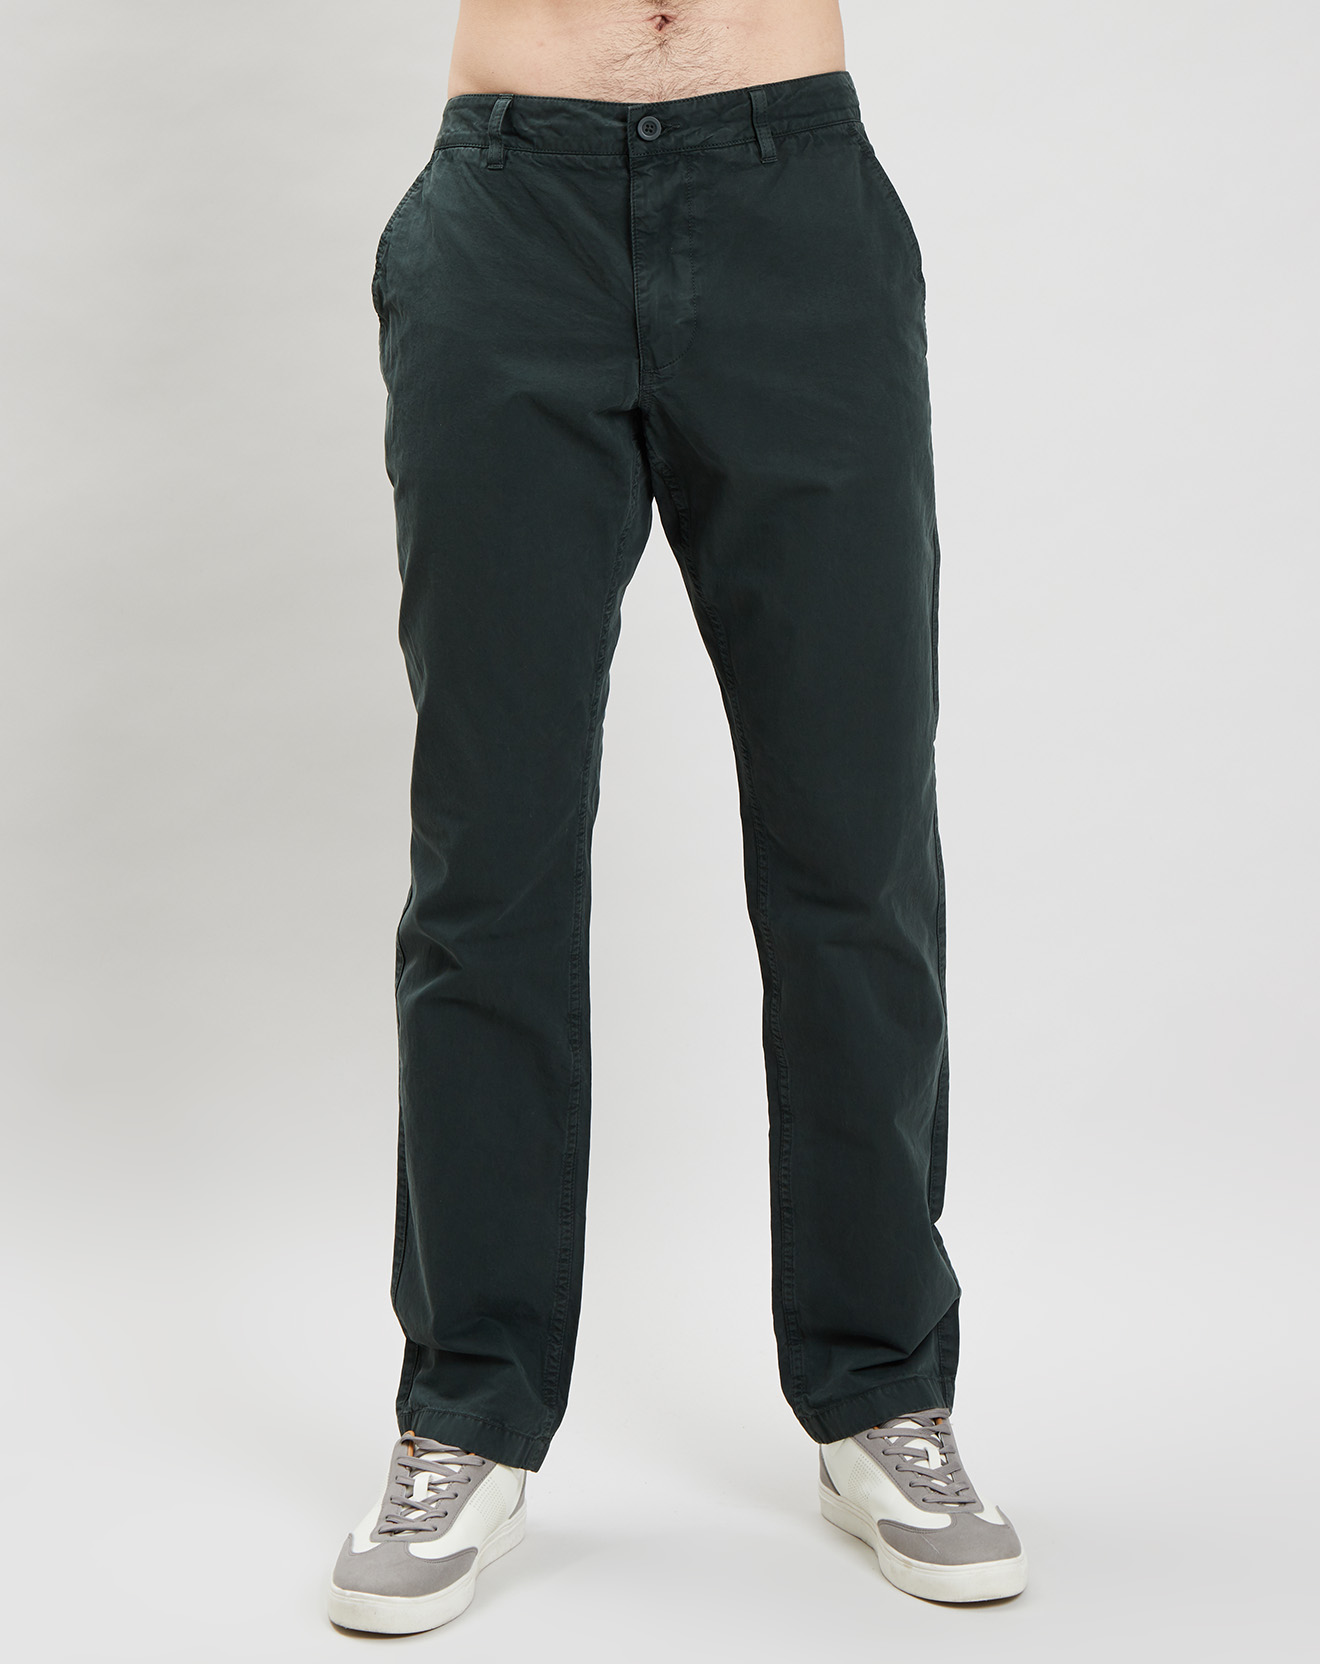 Pantalon SMU Caza vert